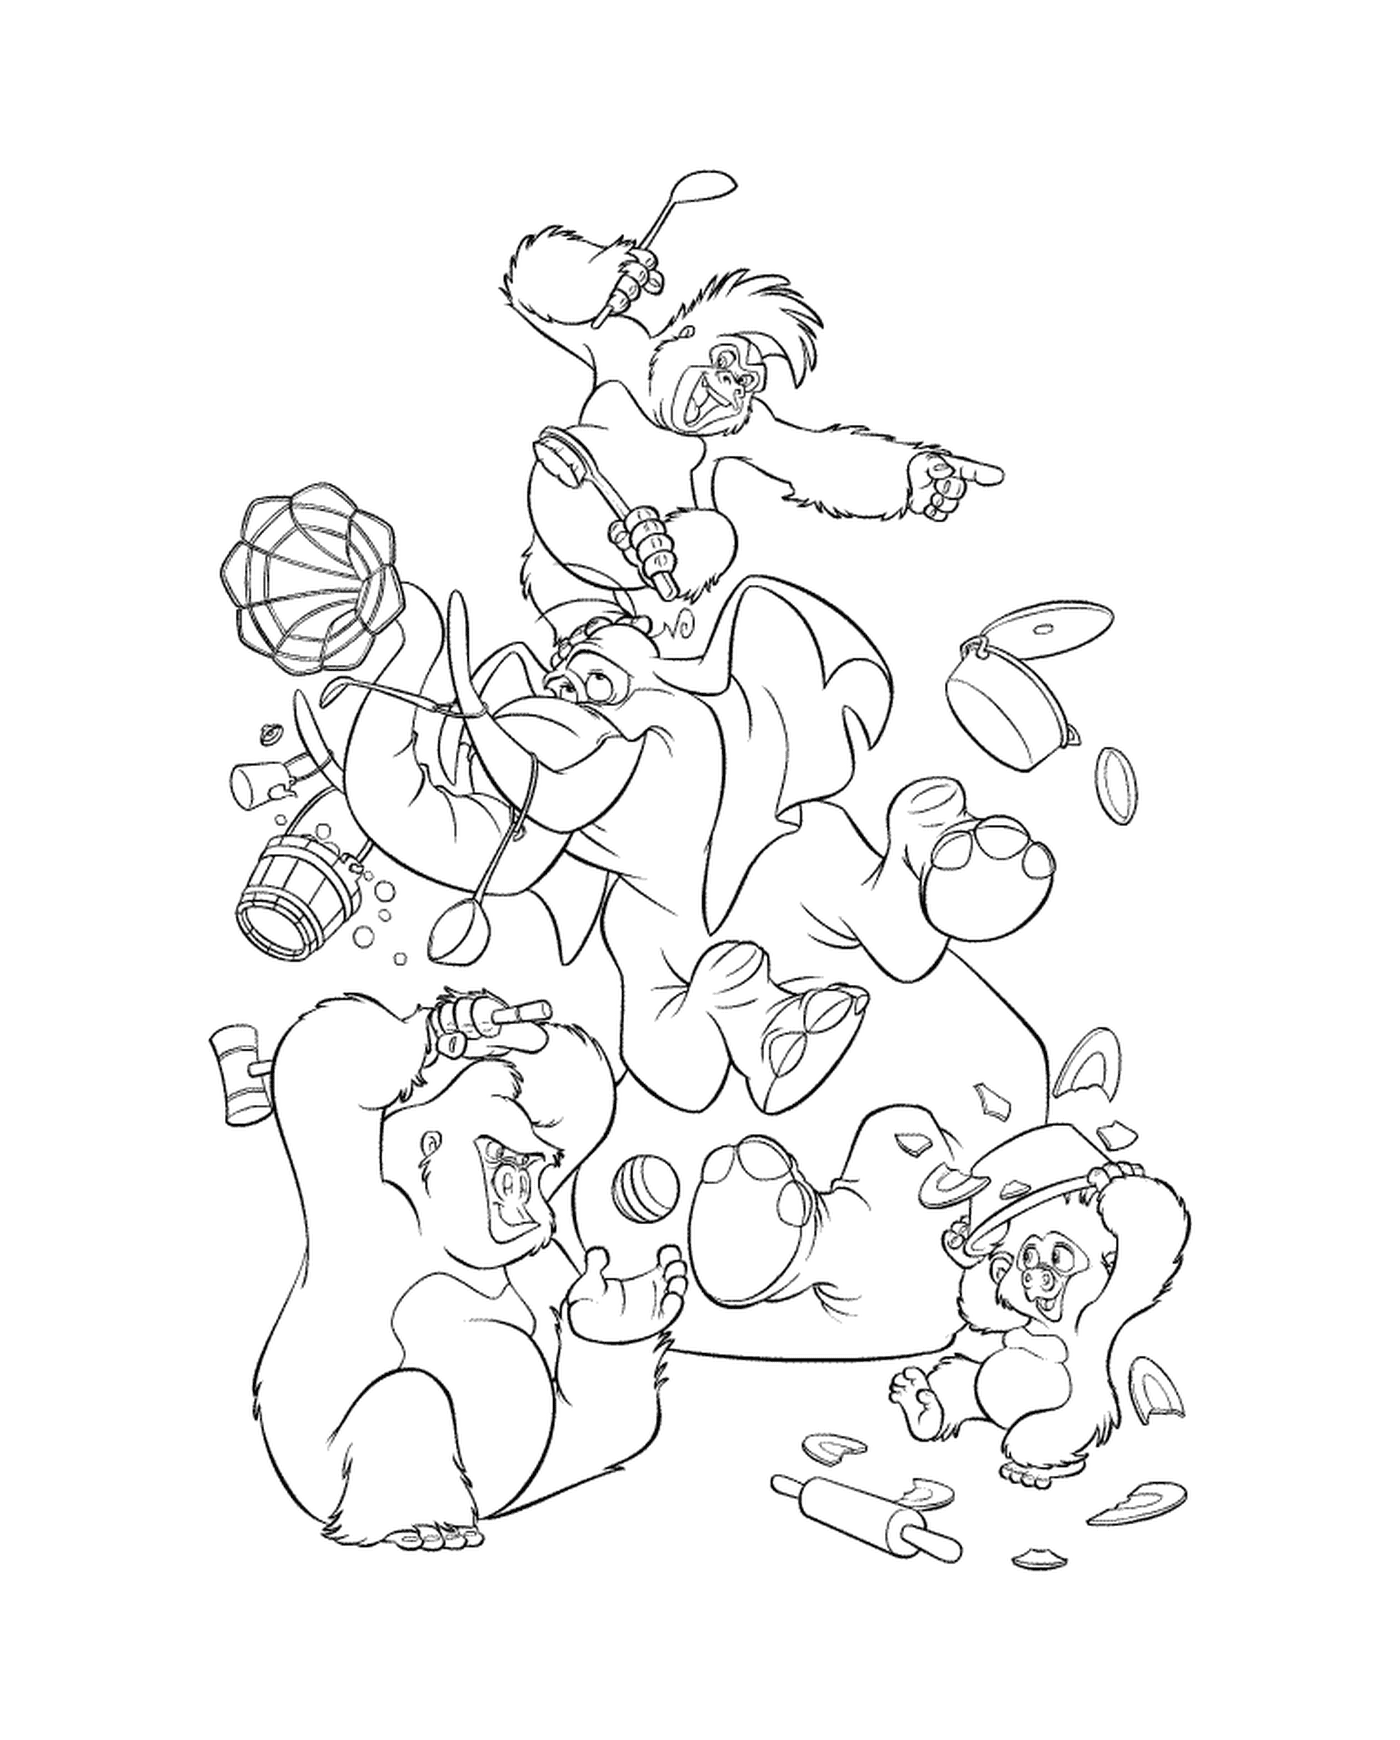  Bärengruppe spielt mit einer Frisbee 